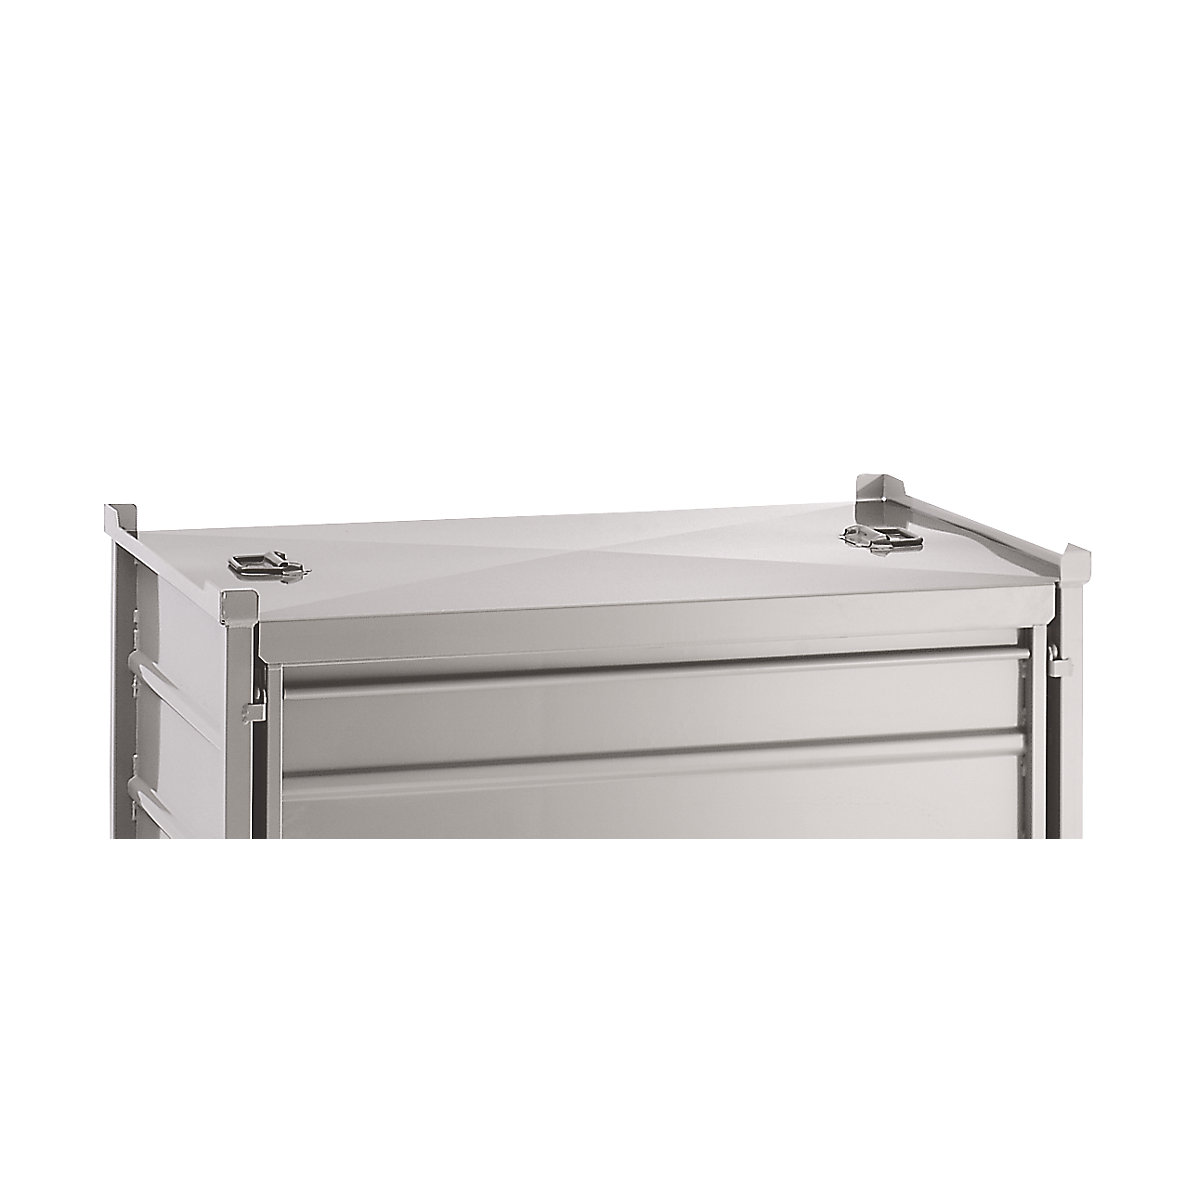 Deckel für faltbare Stapelbox mit Seitenwänden aus Stahlblech